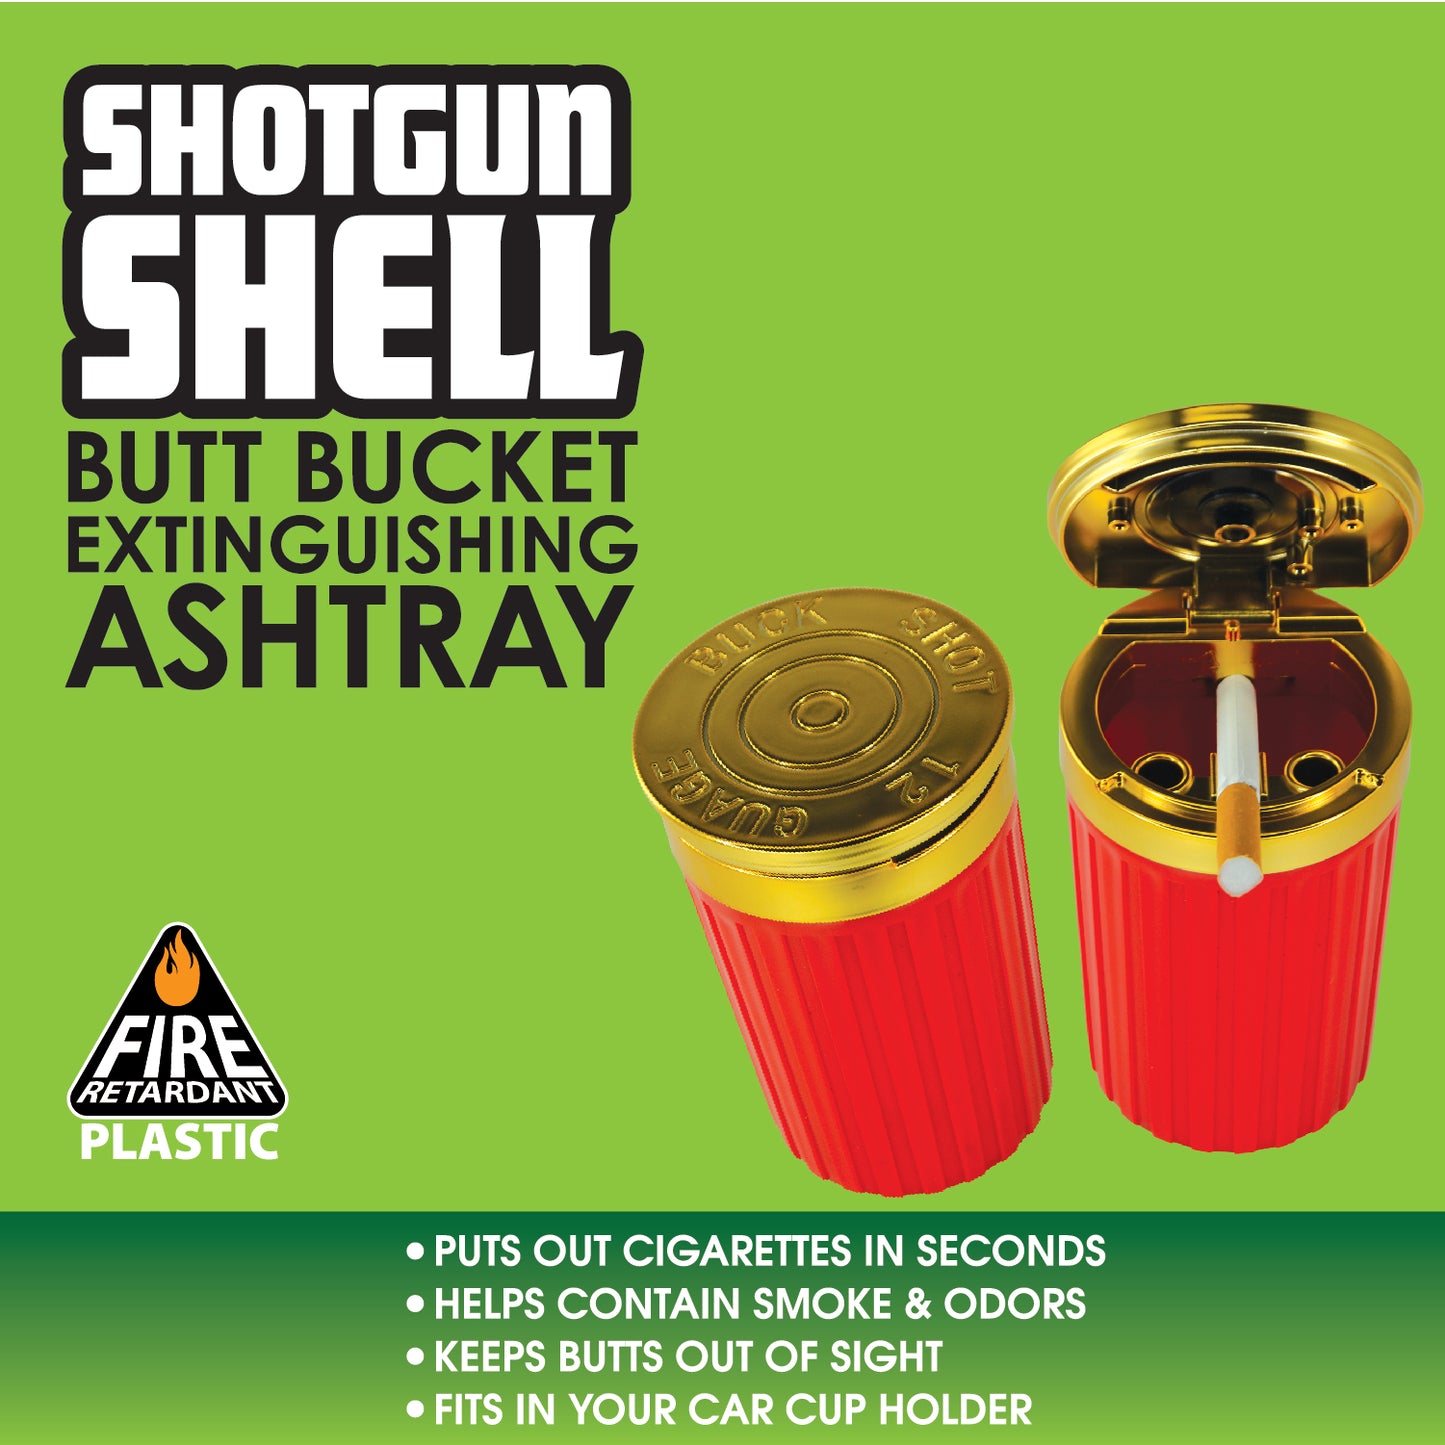 Shotgun Shell Butt Bucket Extinguishing Ashtray